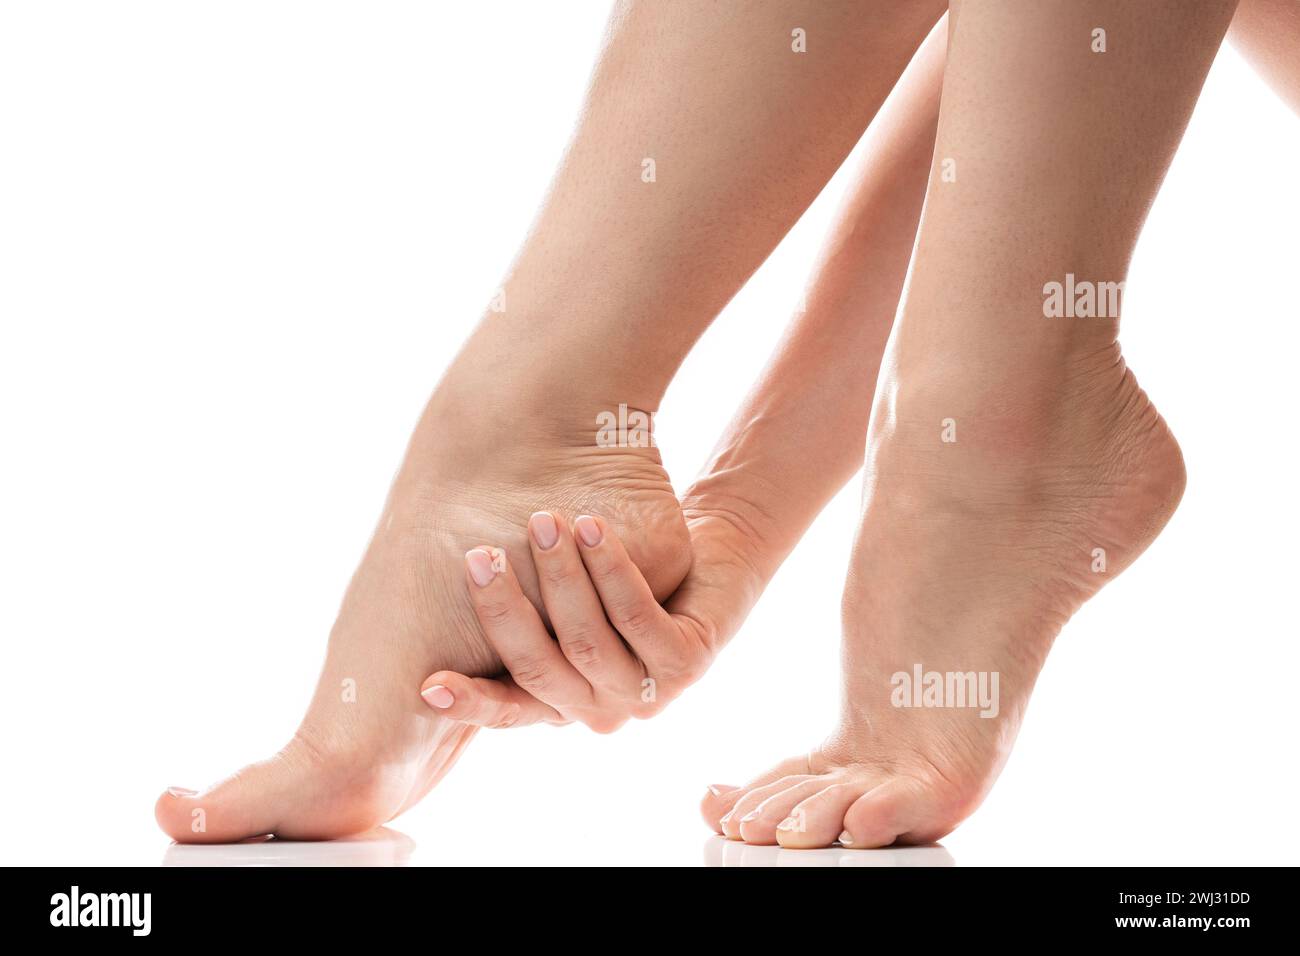 Frau, die sanft die weiche Haut ihrer Ferse berührt. Weibliche Füße auf weißem Hintergrund. Stockfoto